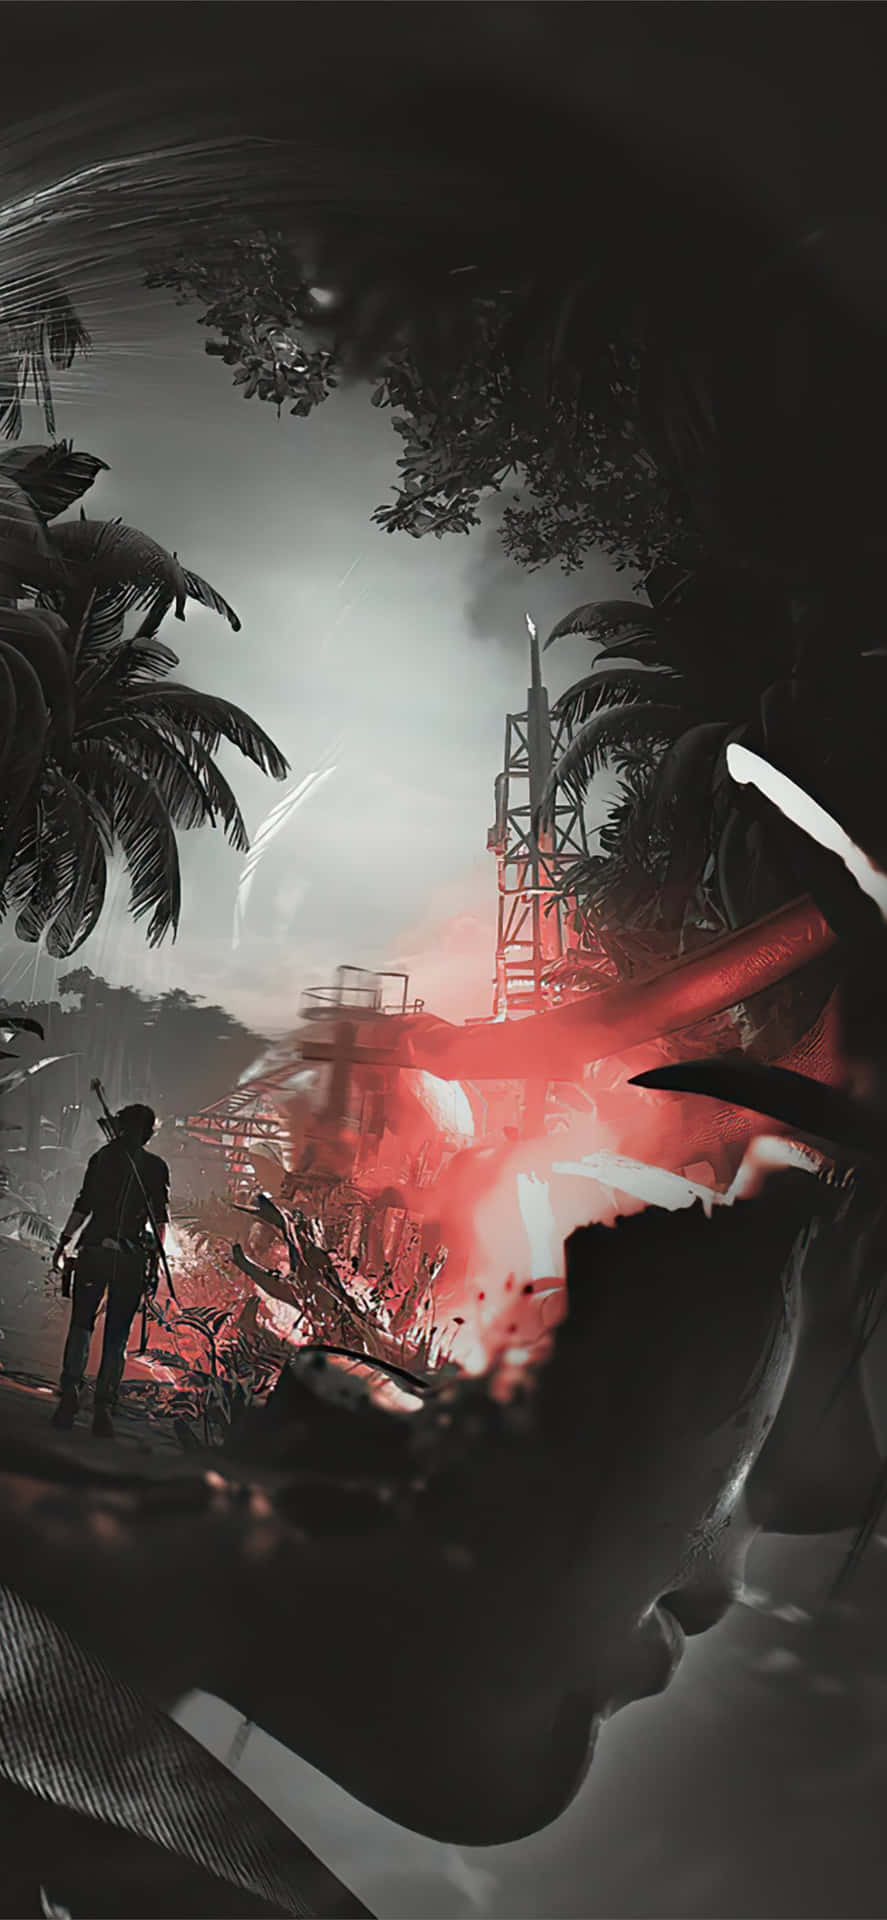 Billedet af Lara Croft's Tomb Raider Adventure på din Iphone 5S Wallpaper